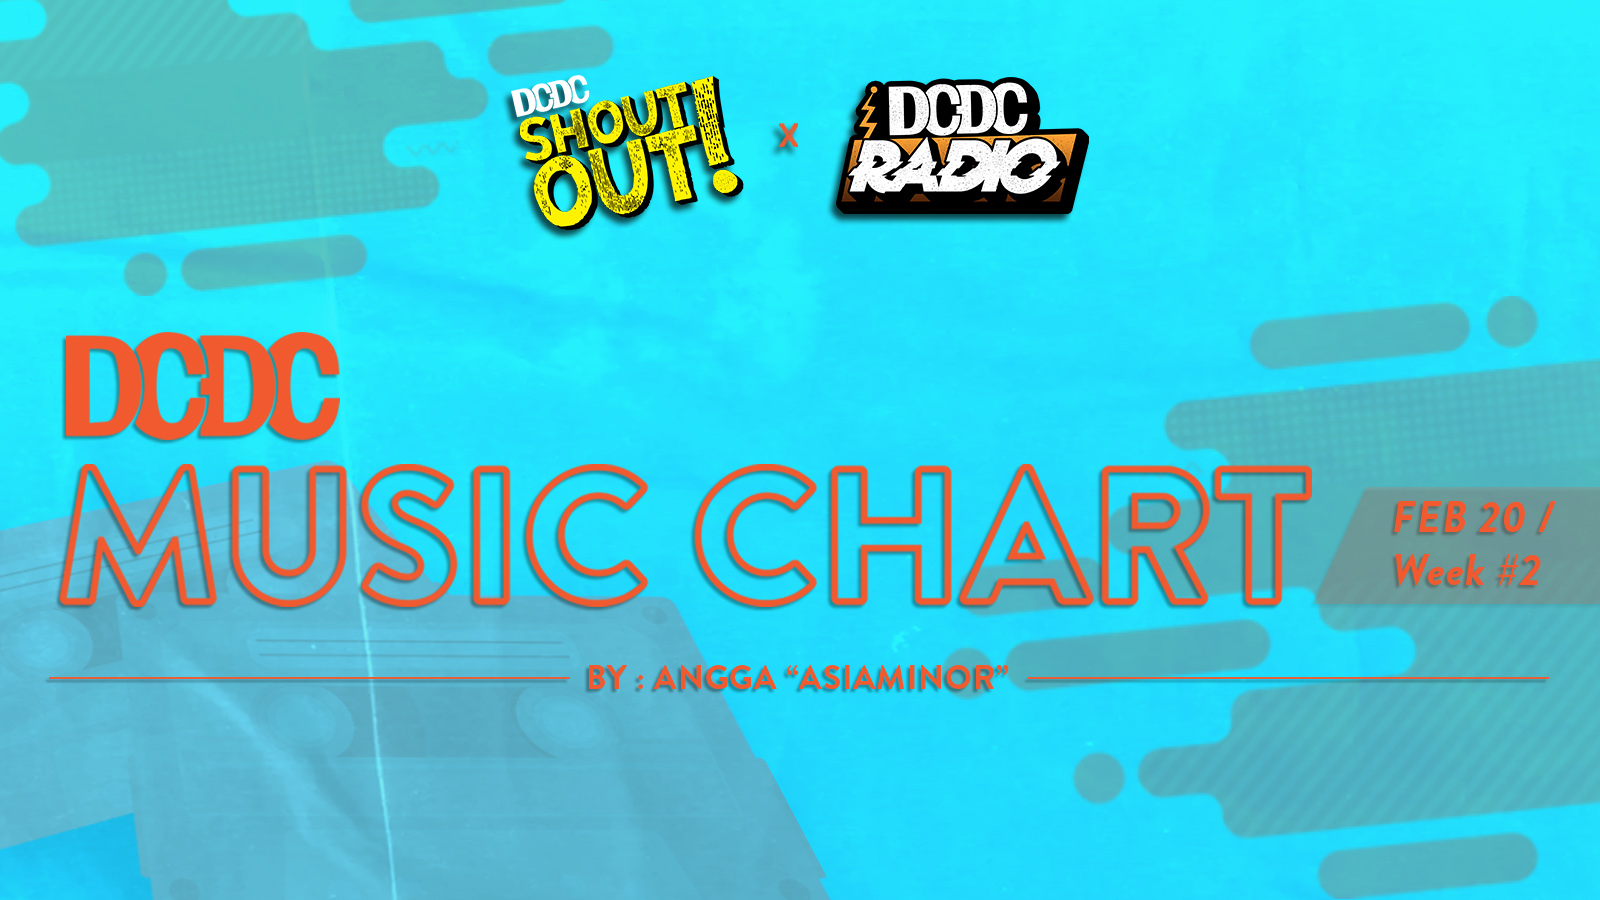 DCDC Music Chart - #2nd Week of Februari 2020